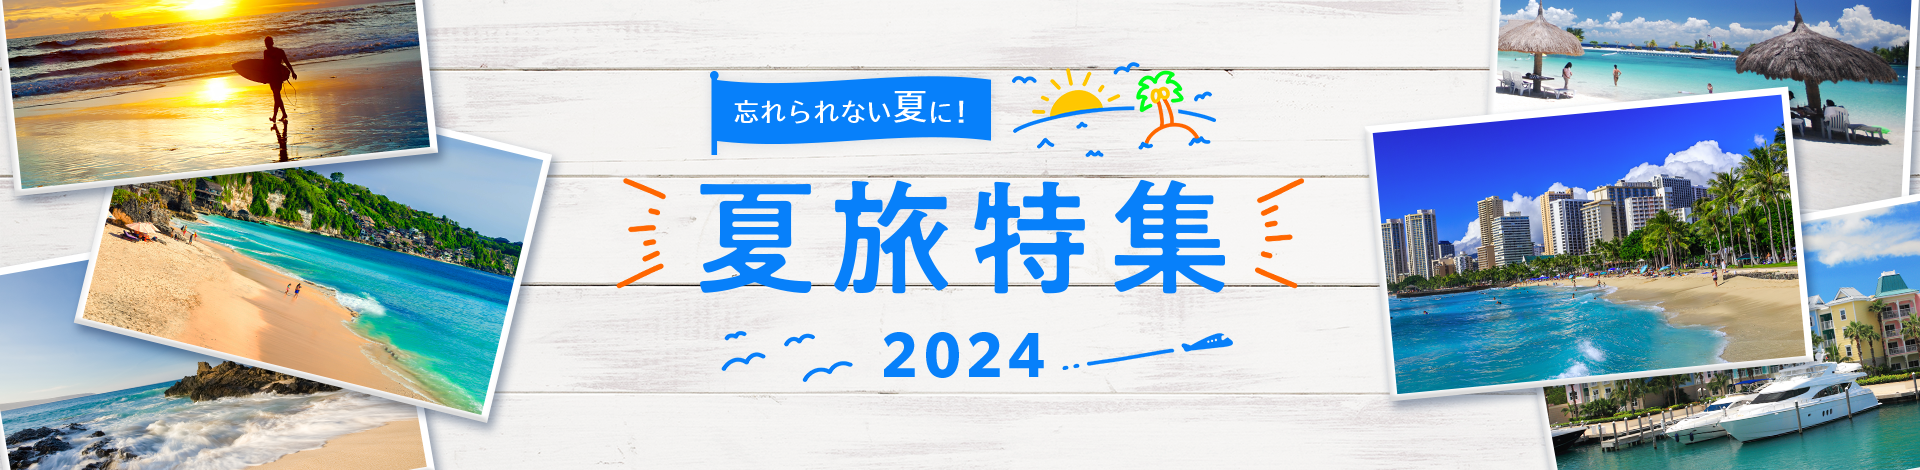 夏休み・お盆の海外旅行特集2024